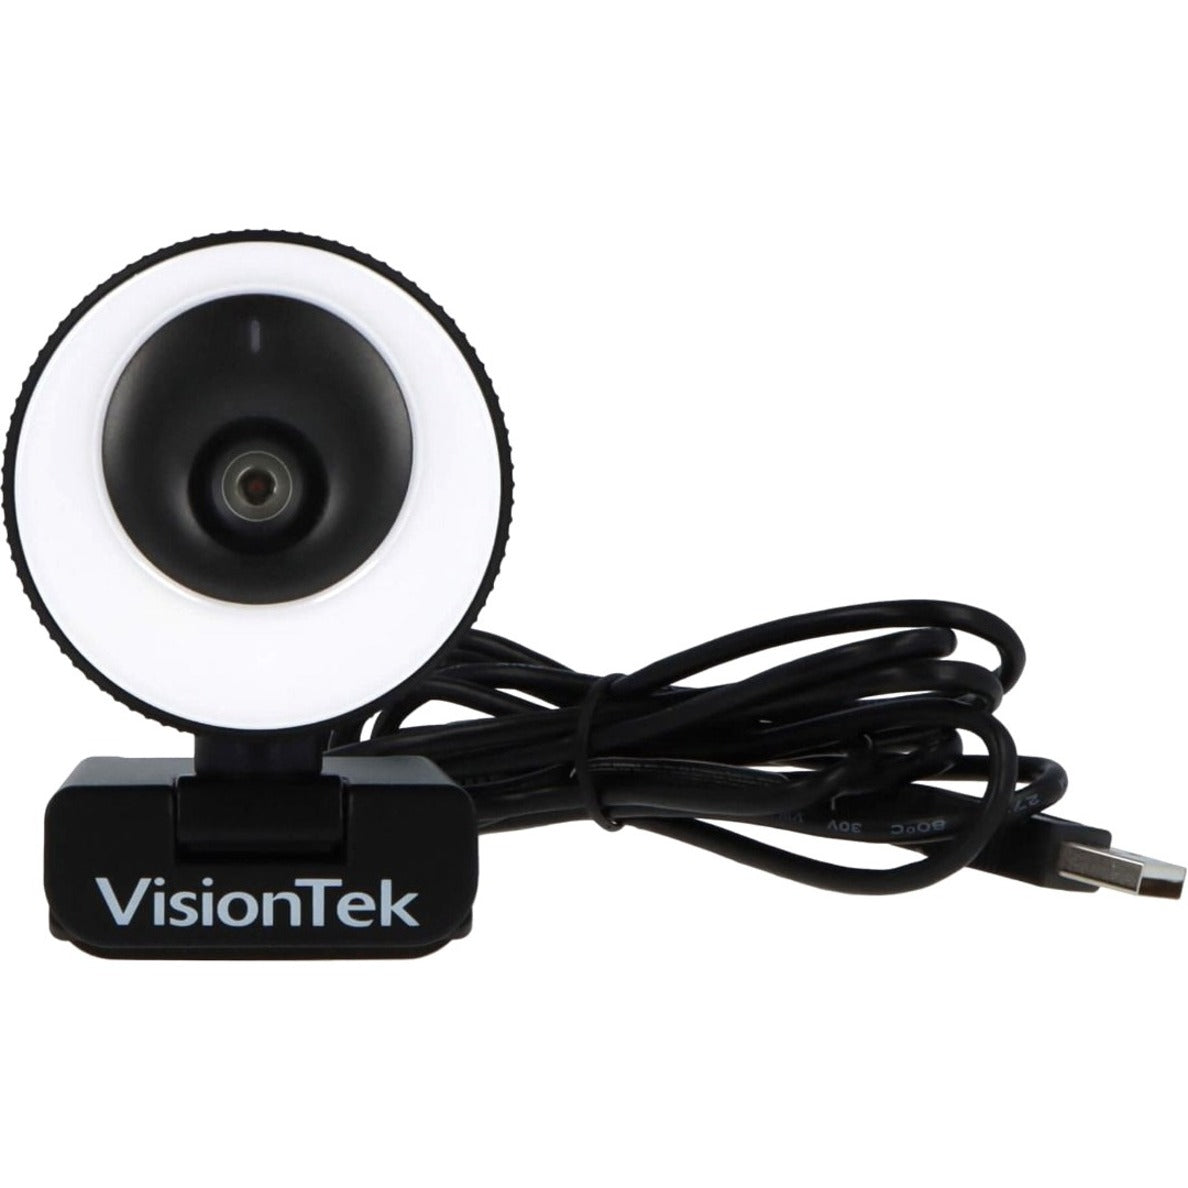 VisionTek 901442 VTWC40 Webcam, 2 Megapixel, 60 fps, USB 2.0